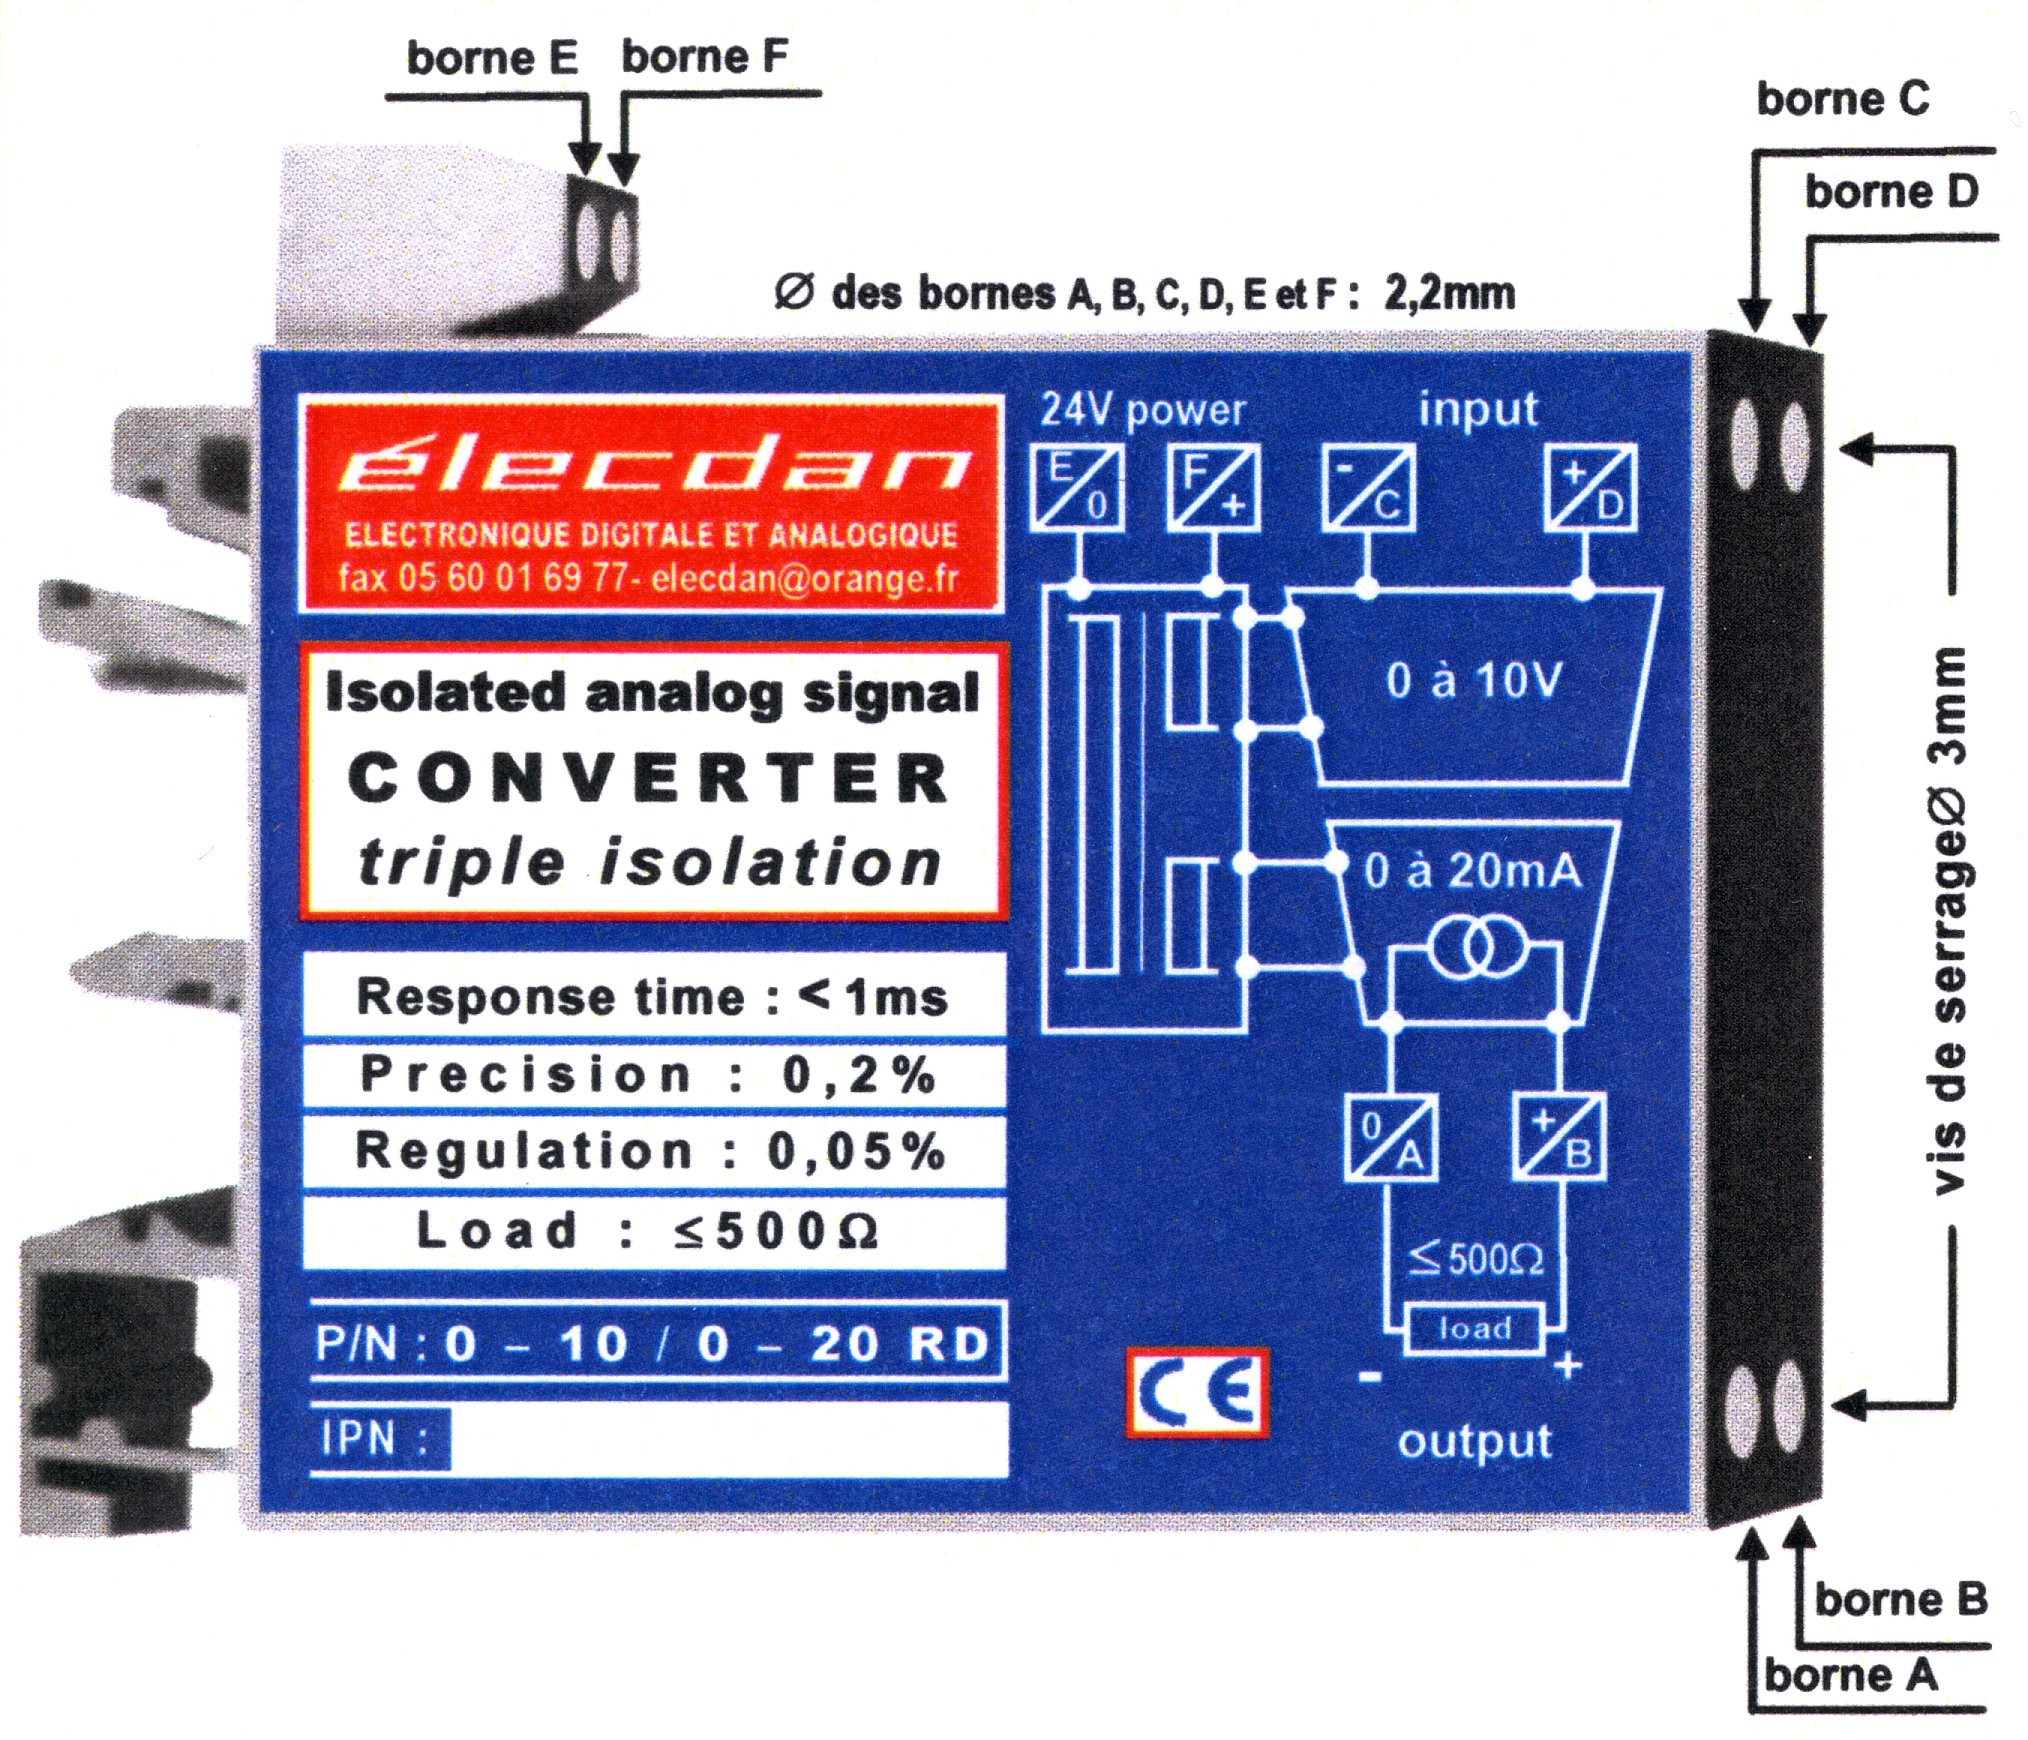 Boîtier pour RAIL DIN : (66+11) x (53+9) x 12.5 mm- Réf.  0-10 / 0-20 RD